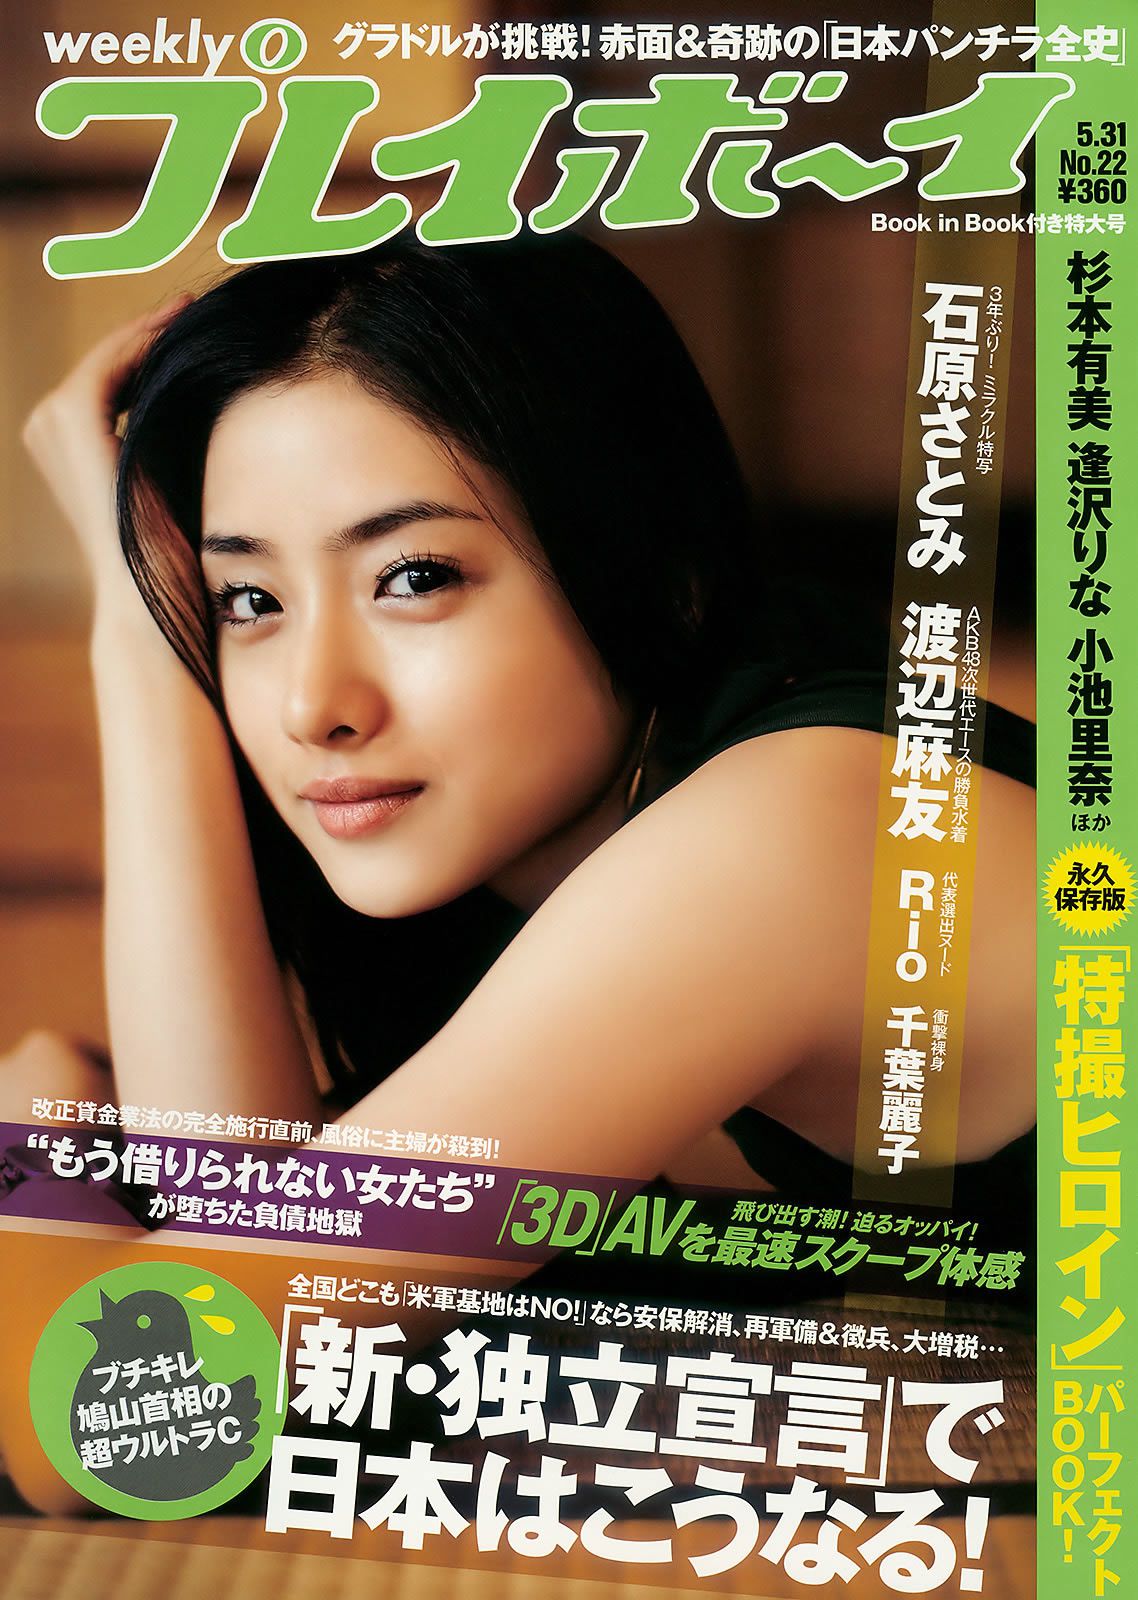 [Weekly Playboy] 2010 No.22 石原さとみ 杉本有美 逢沢りな 渡辺麻友 小林优美 谷桃子 Ri